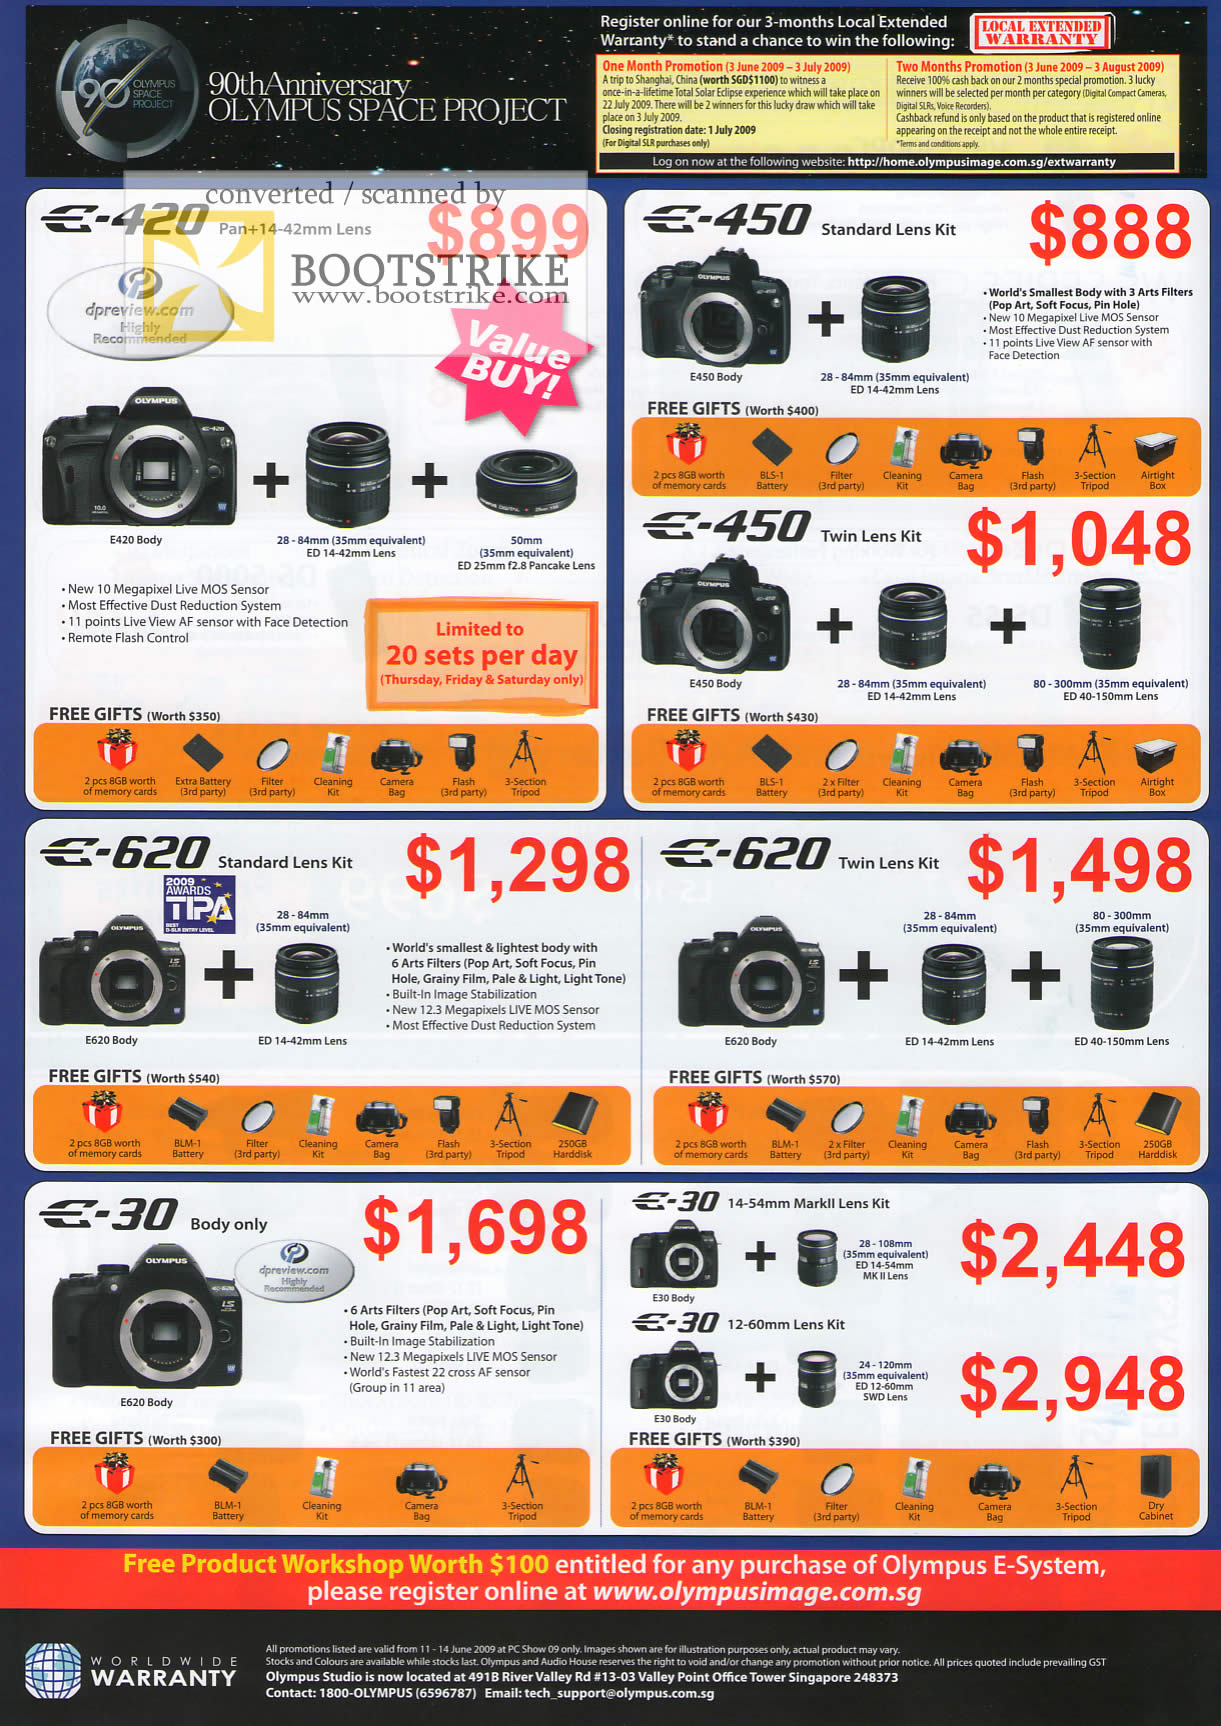 PC Show 2009 price list image brochure of Olympus E-420 E-450 E-620 E-30 Digital Camera DSLR